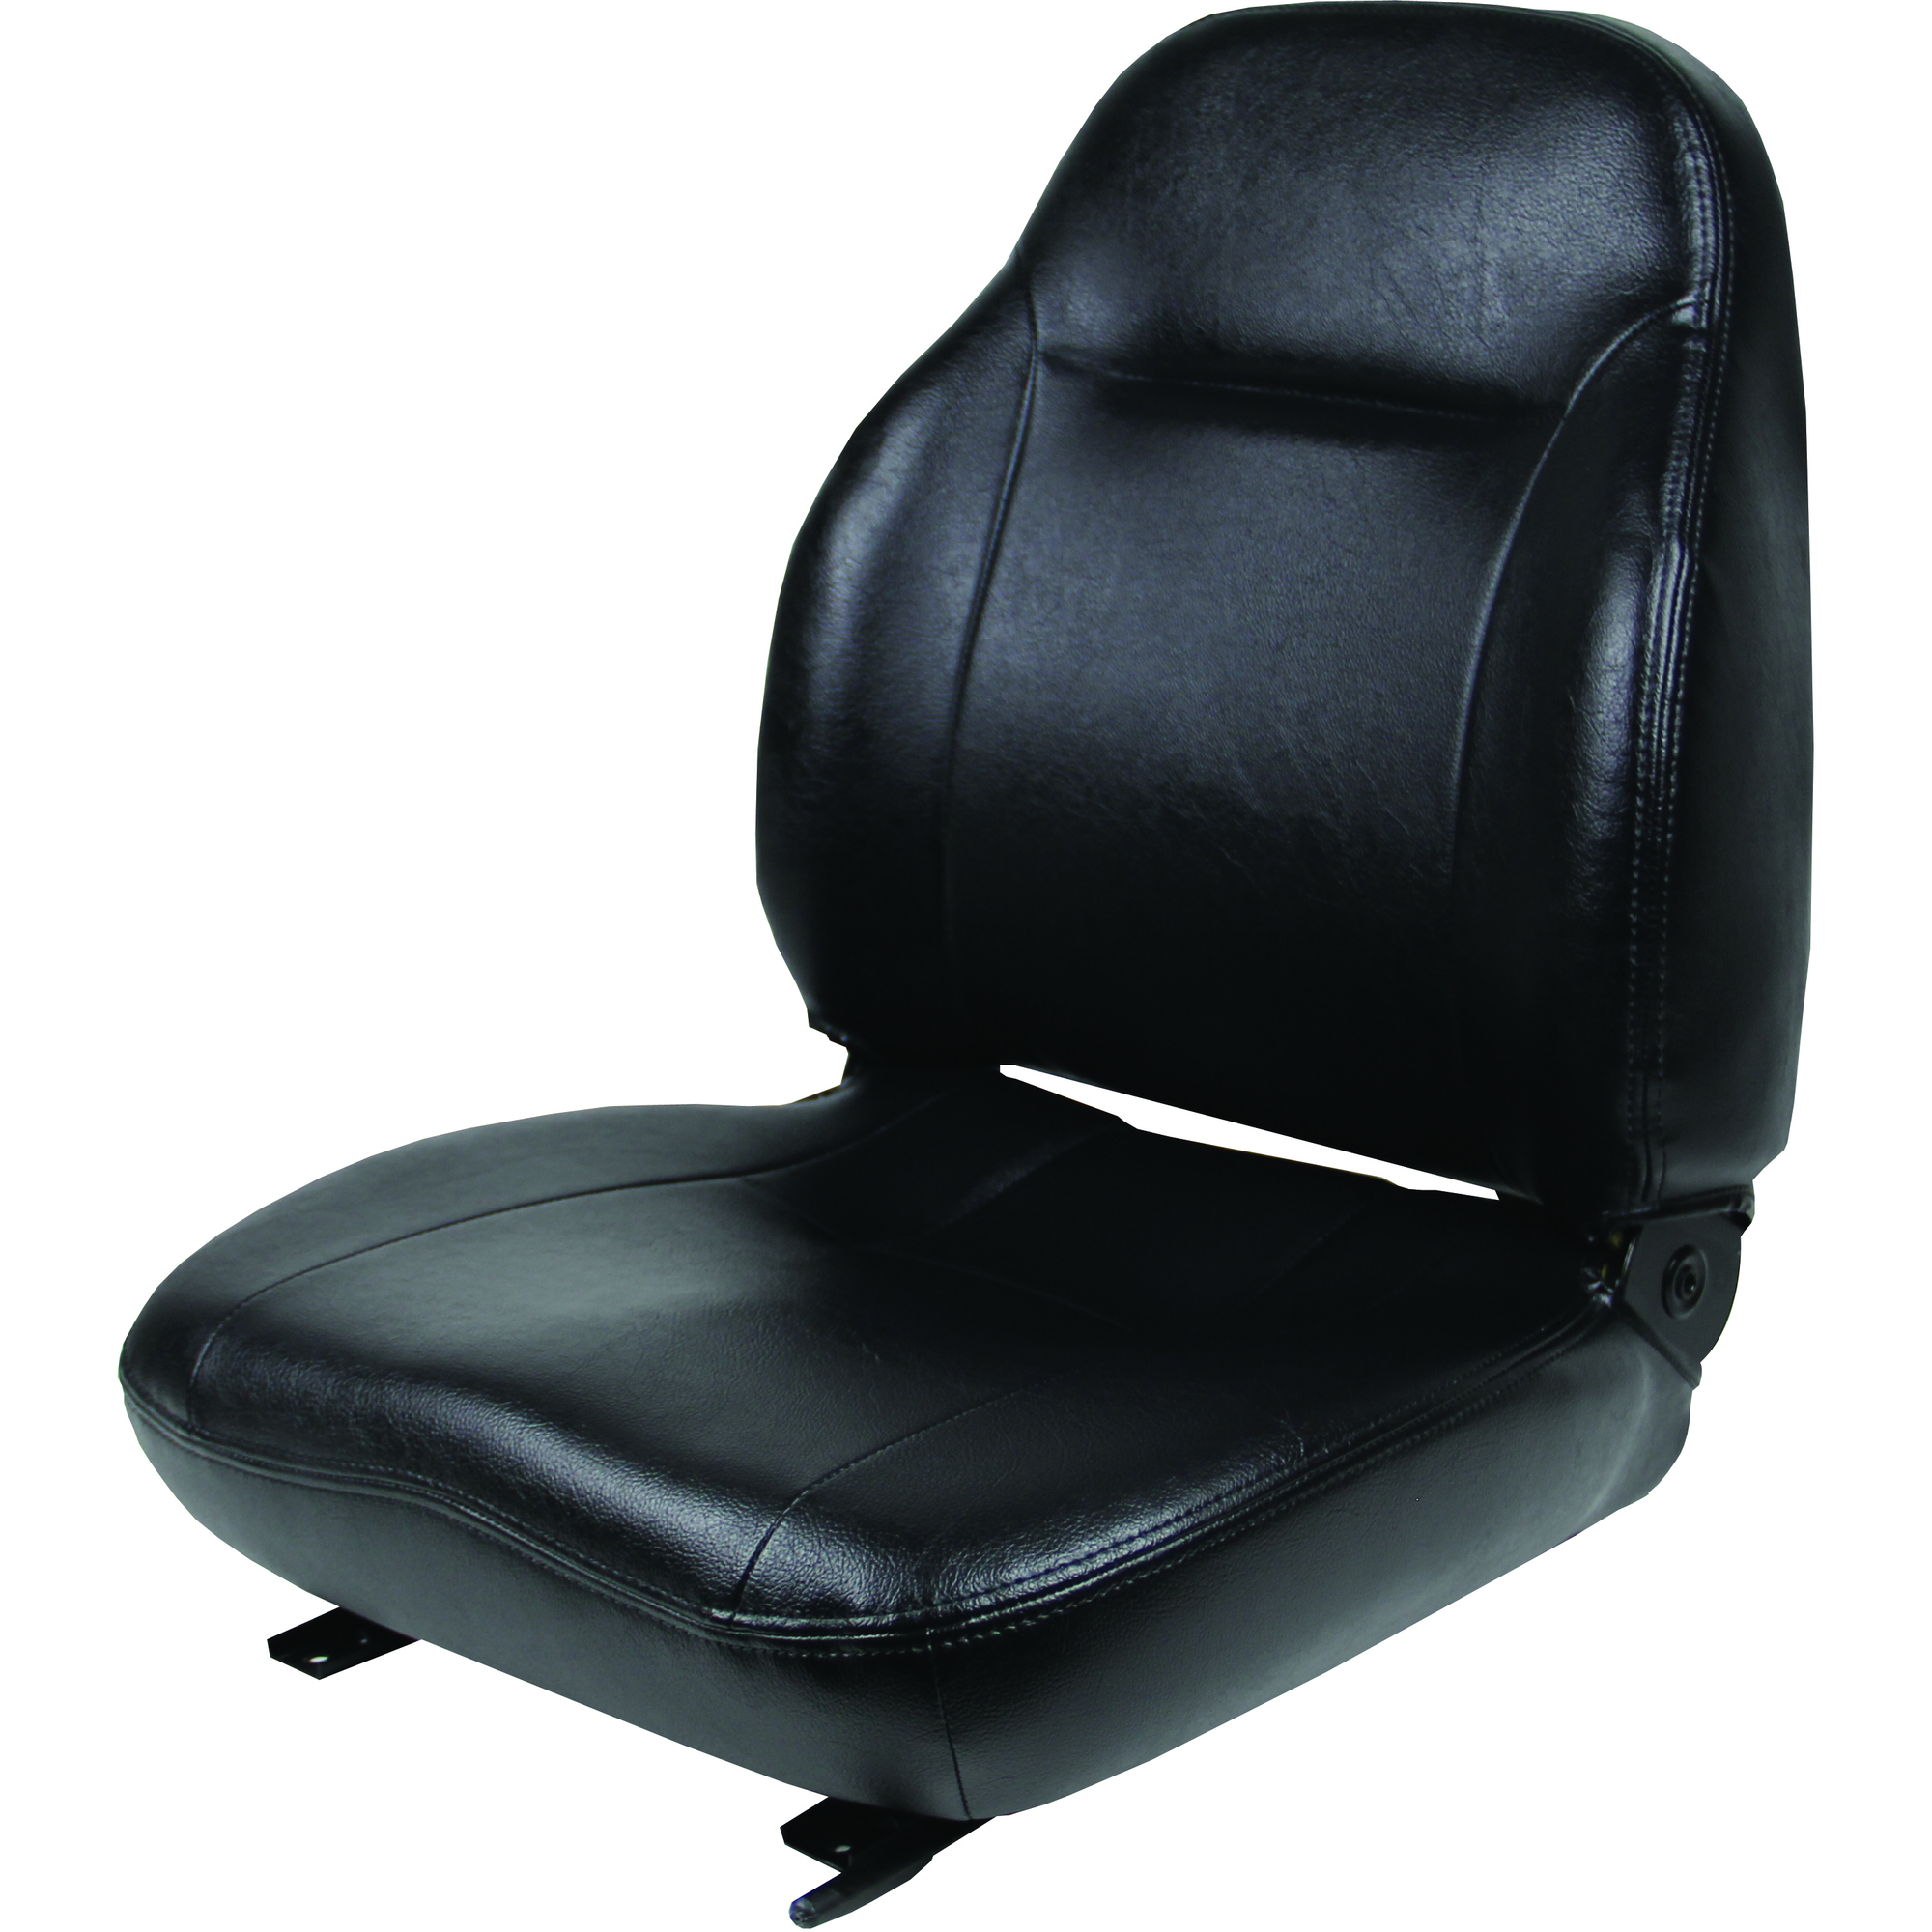 Black Talon Seats Black Talon, Premium high back seat w/ lumbar supt, Capacity 260 lb, Model 441000BK